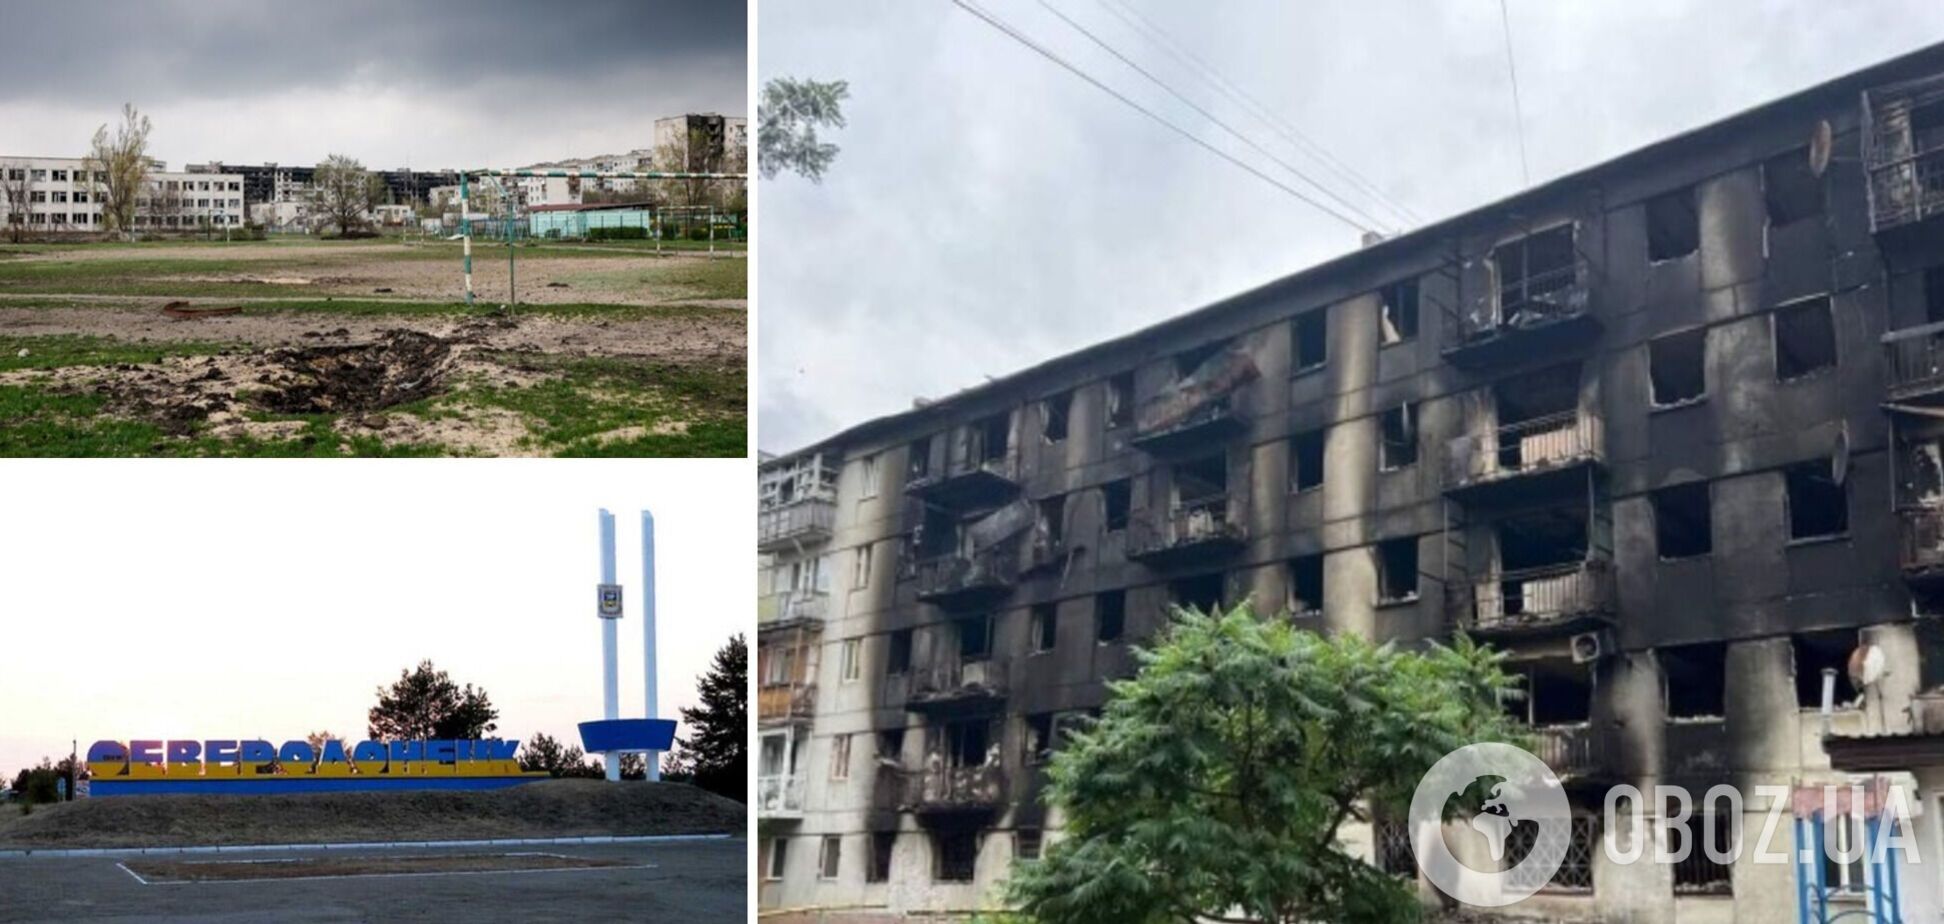 У Сєвєродонецьку окупанти 'полюють' на патріотів України, інфраструктура міста зруйнована